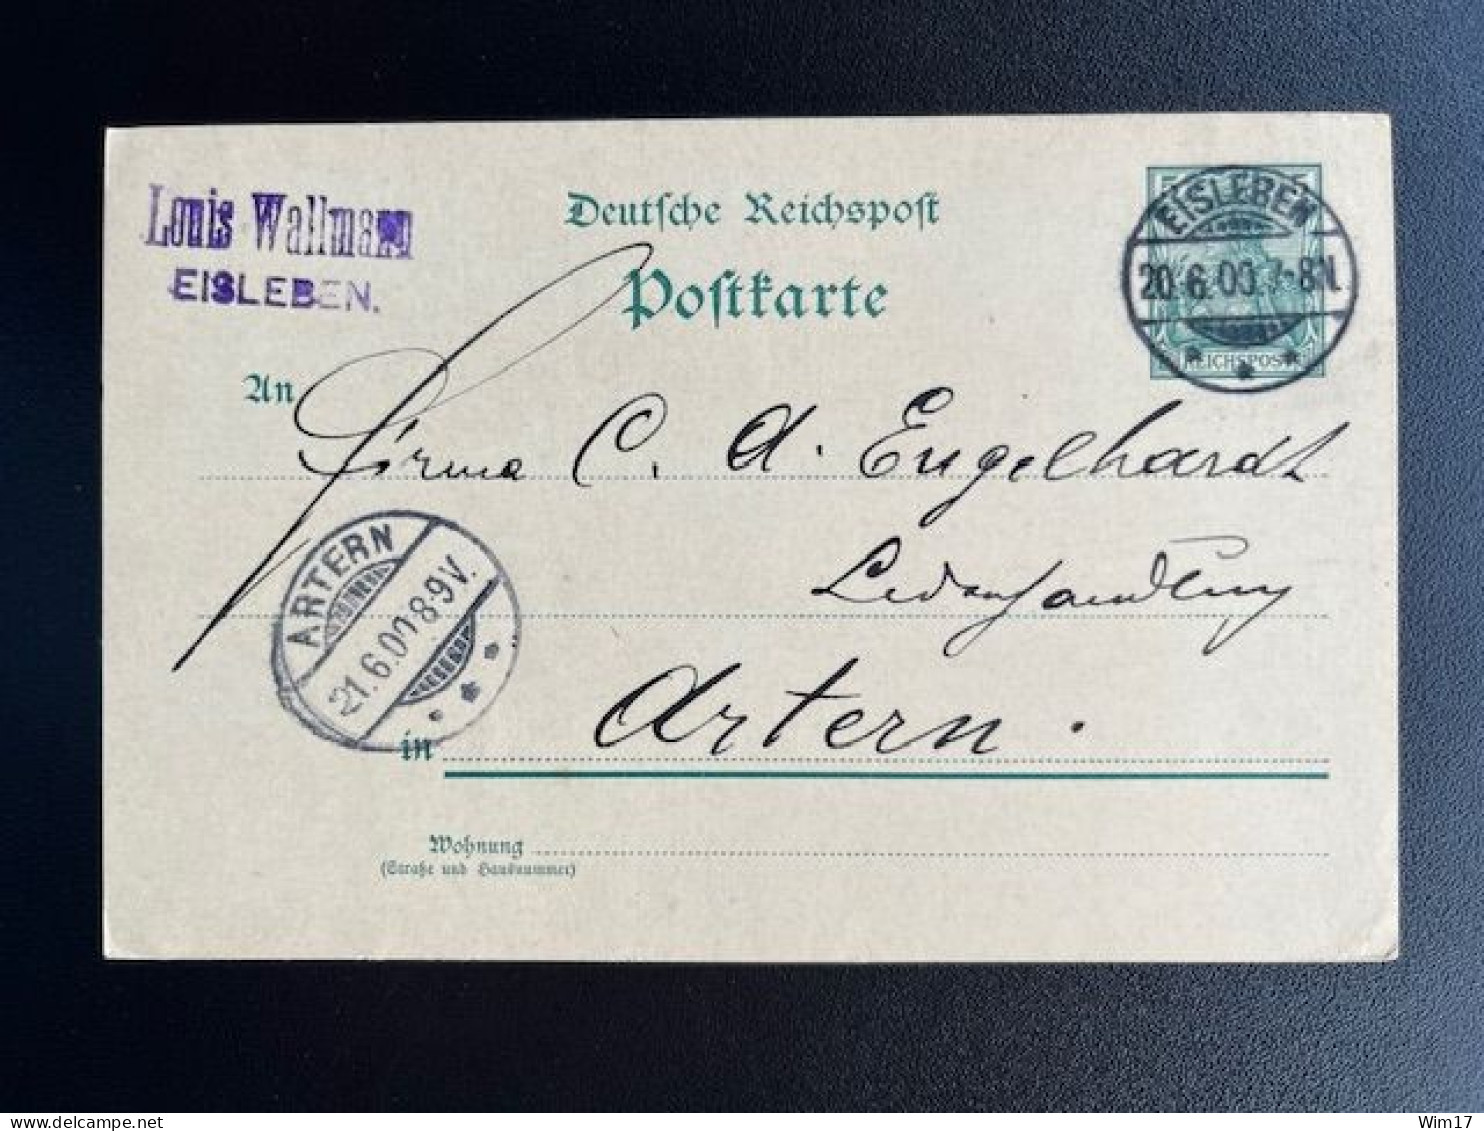 GERMANY 1900 POSTCARD EISLEBEN TO ARTERN 20-06-1900 DUITSLAND DEUTSCHLAND - Briefkaarten